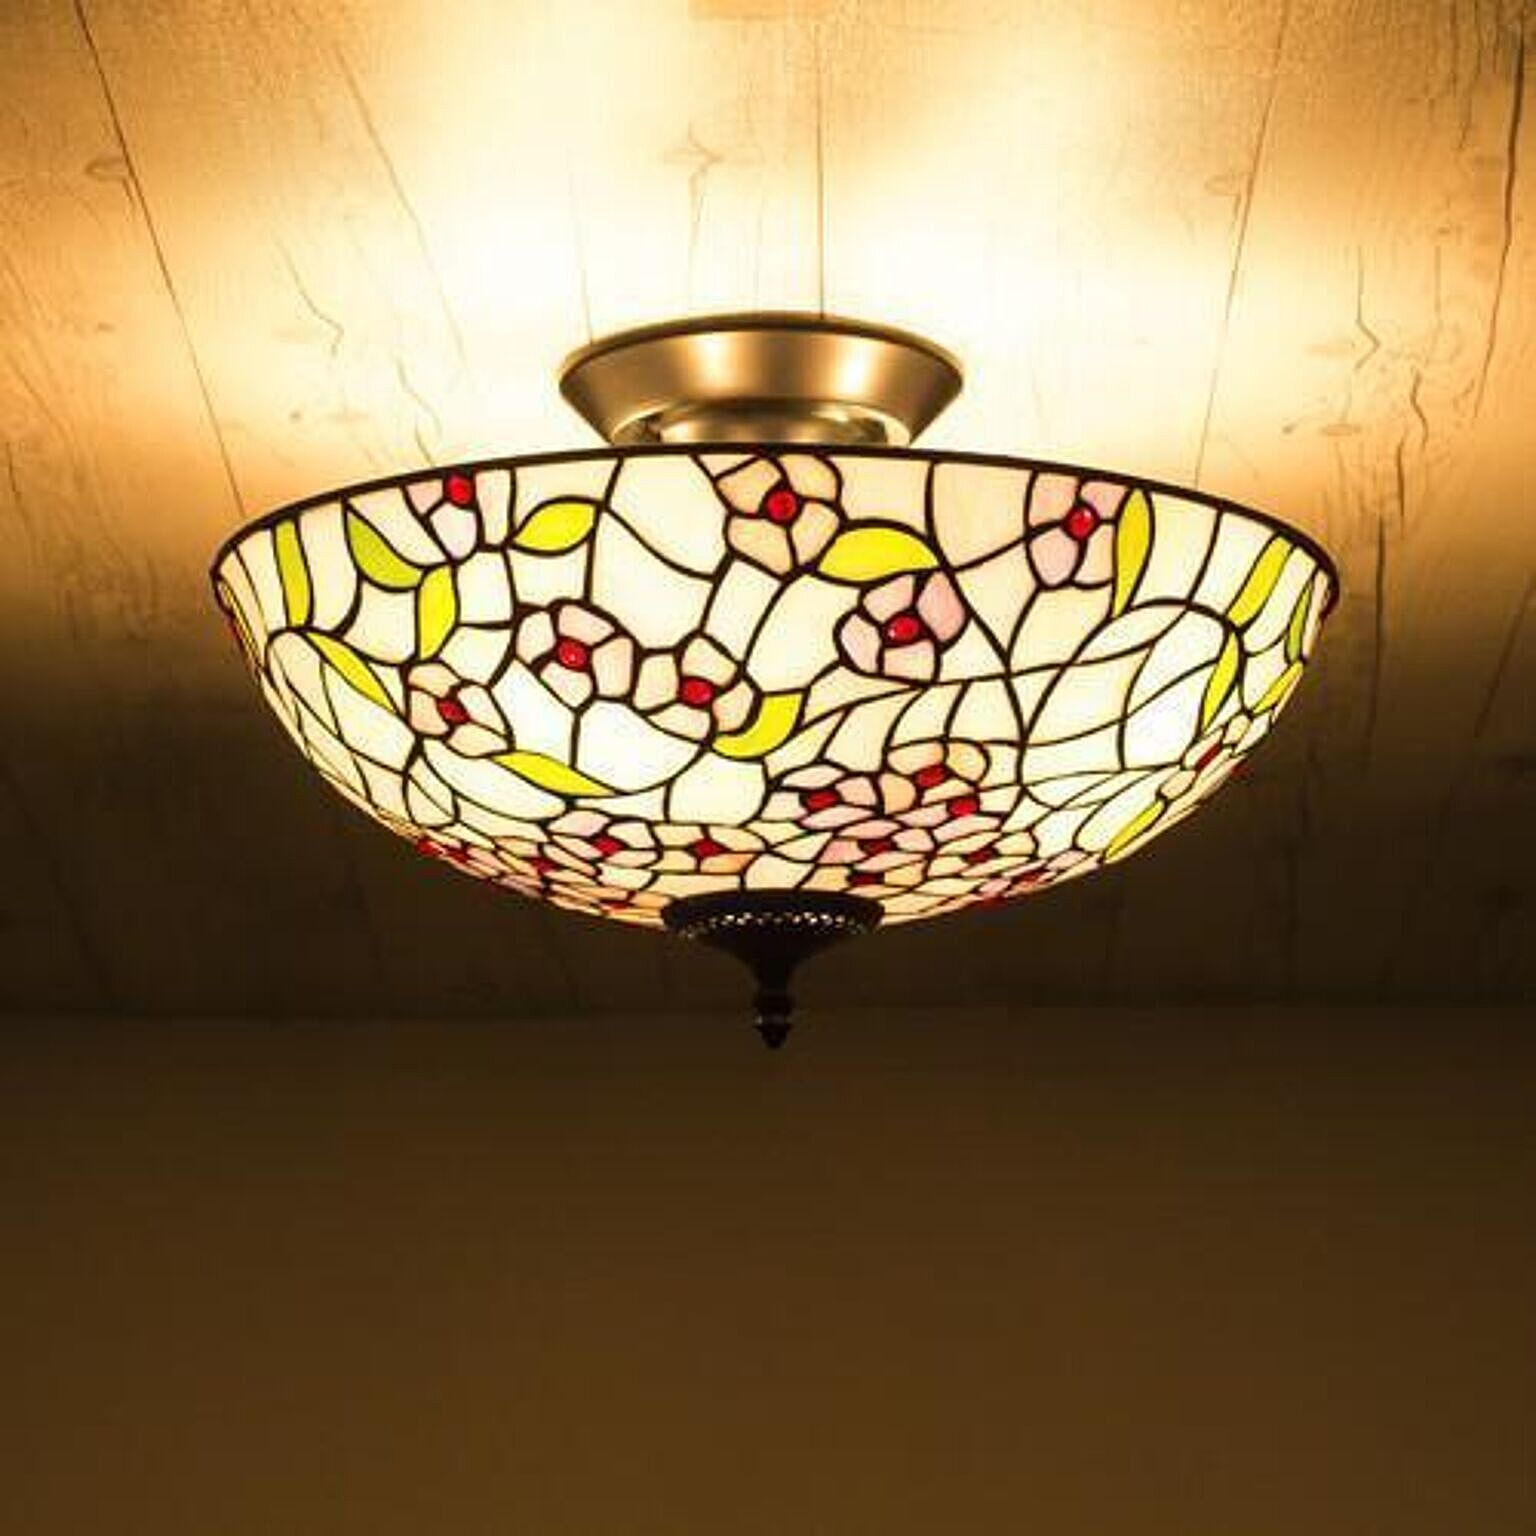 シーリングライト ステンドグラス Vitrail ローズドレ 天井照明